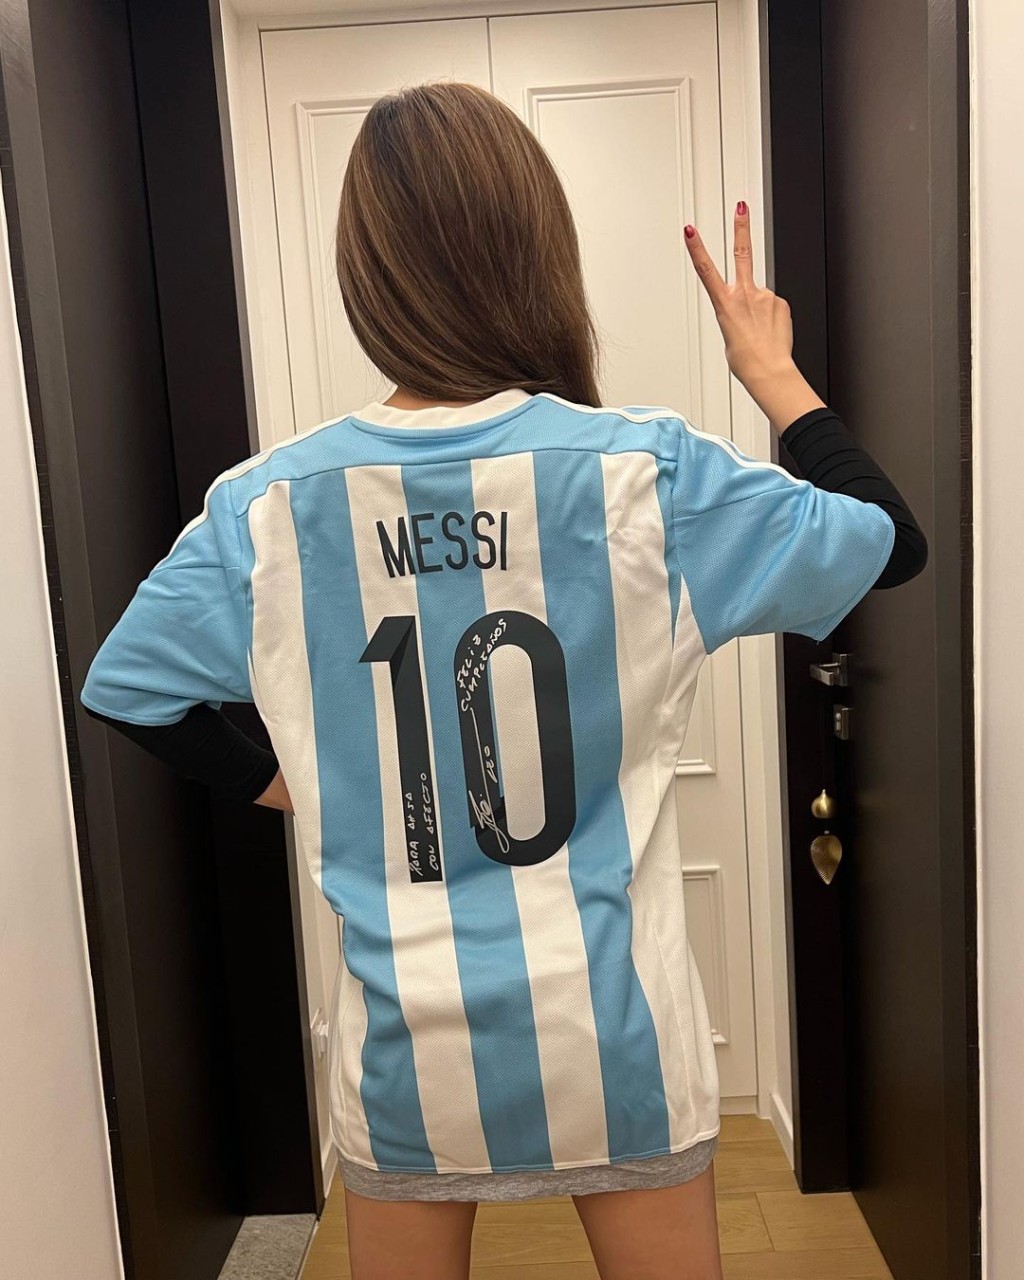 她更穿上該球衣力撐阿根廷。蔡卓妍IG